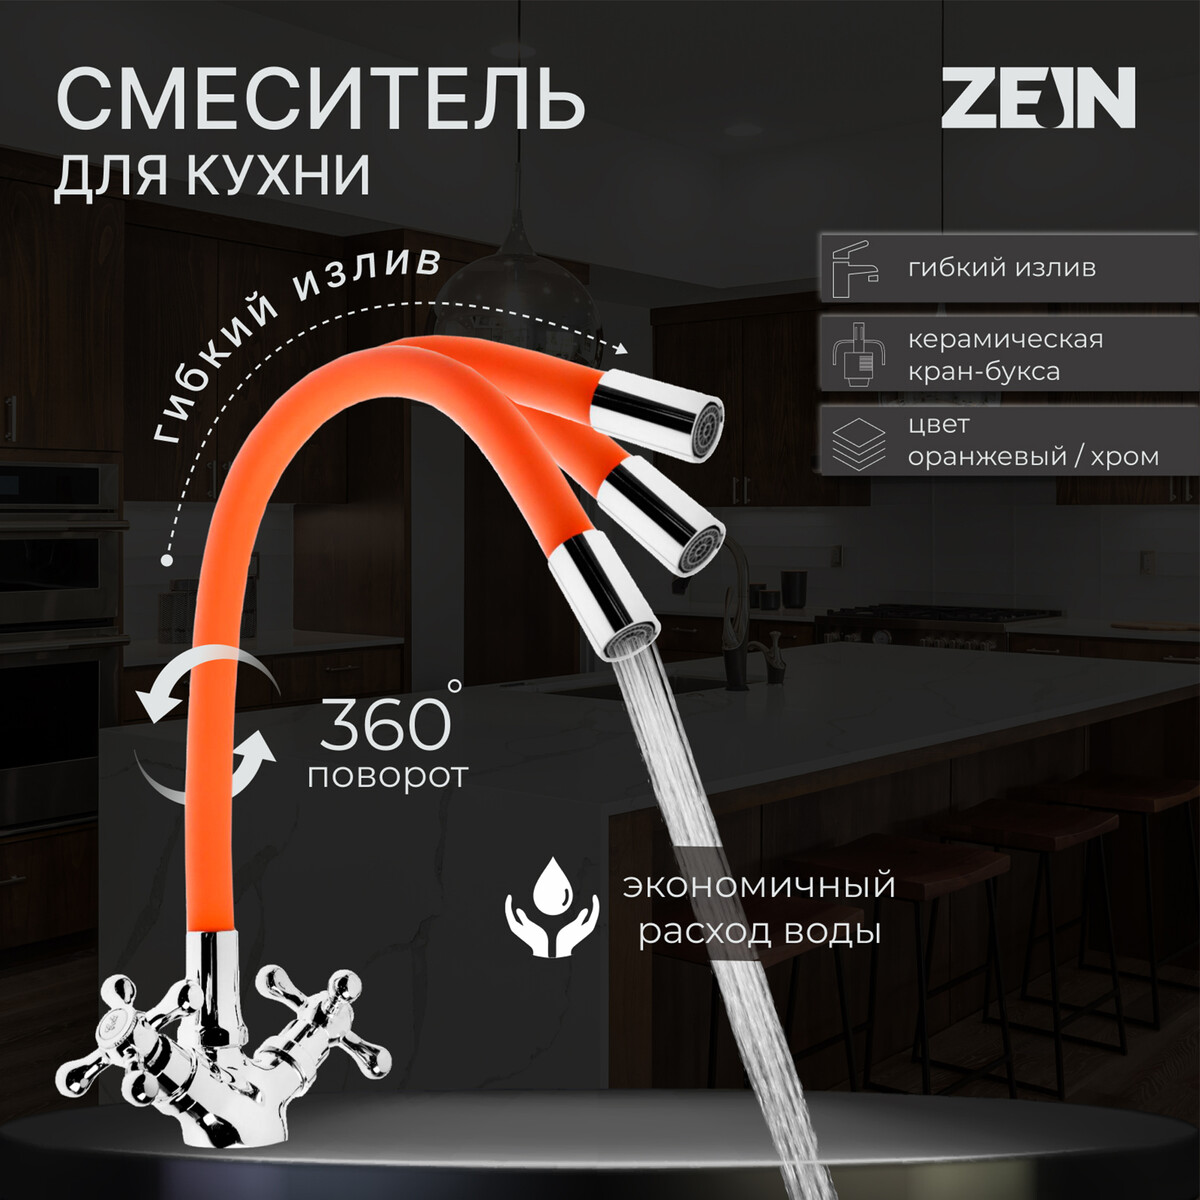 Смеситель для кухни zein z2107, двухвентильный, силиконовый излив, оранжевый/хром смеситель для кухни zein z6972 силиконовый излив картридж 40 мм латунь хром